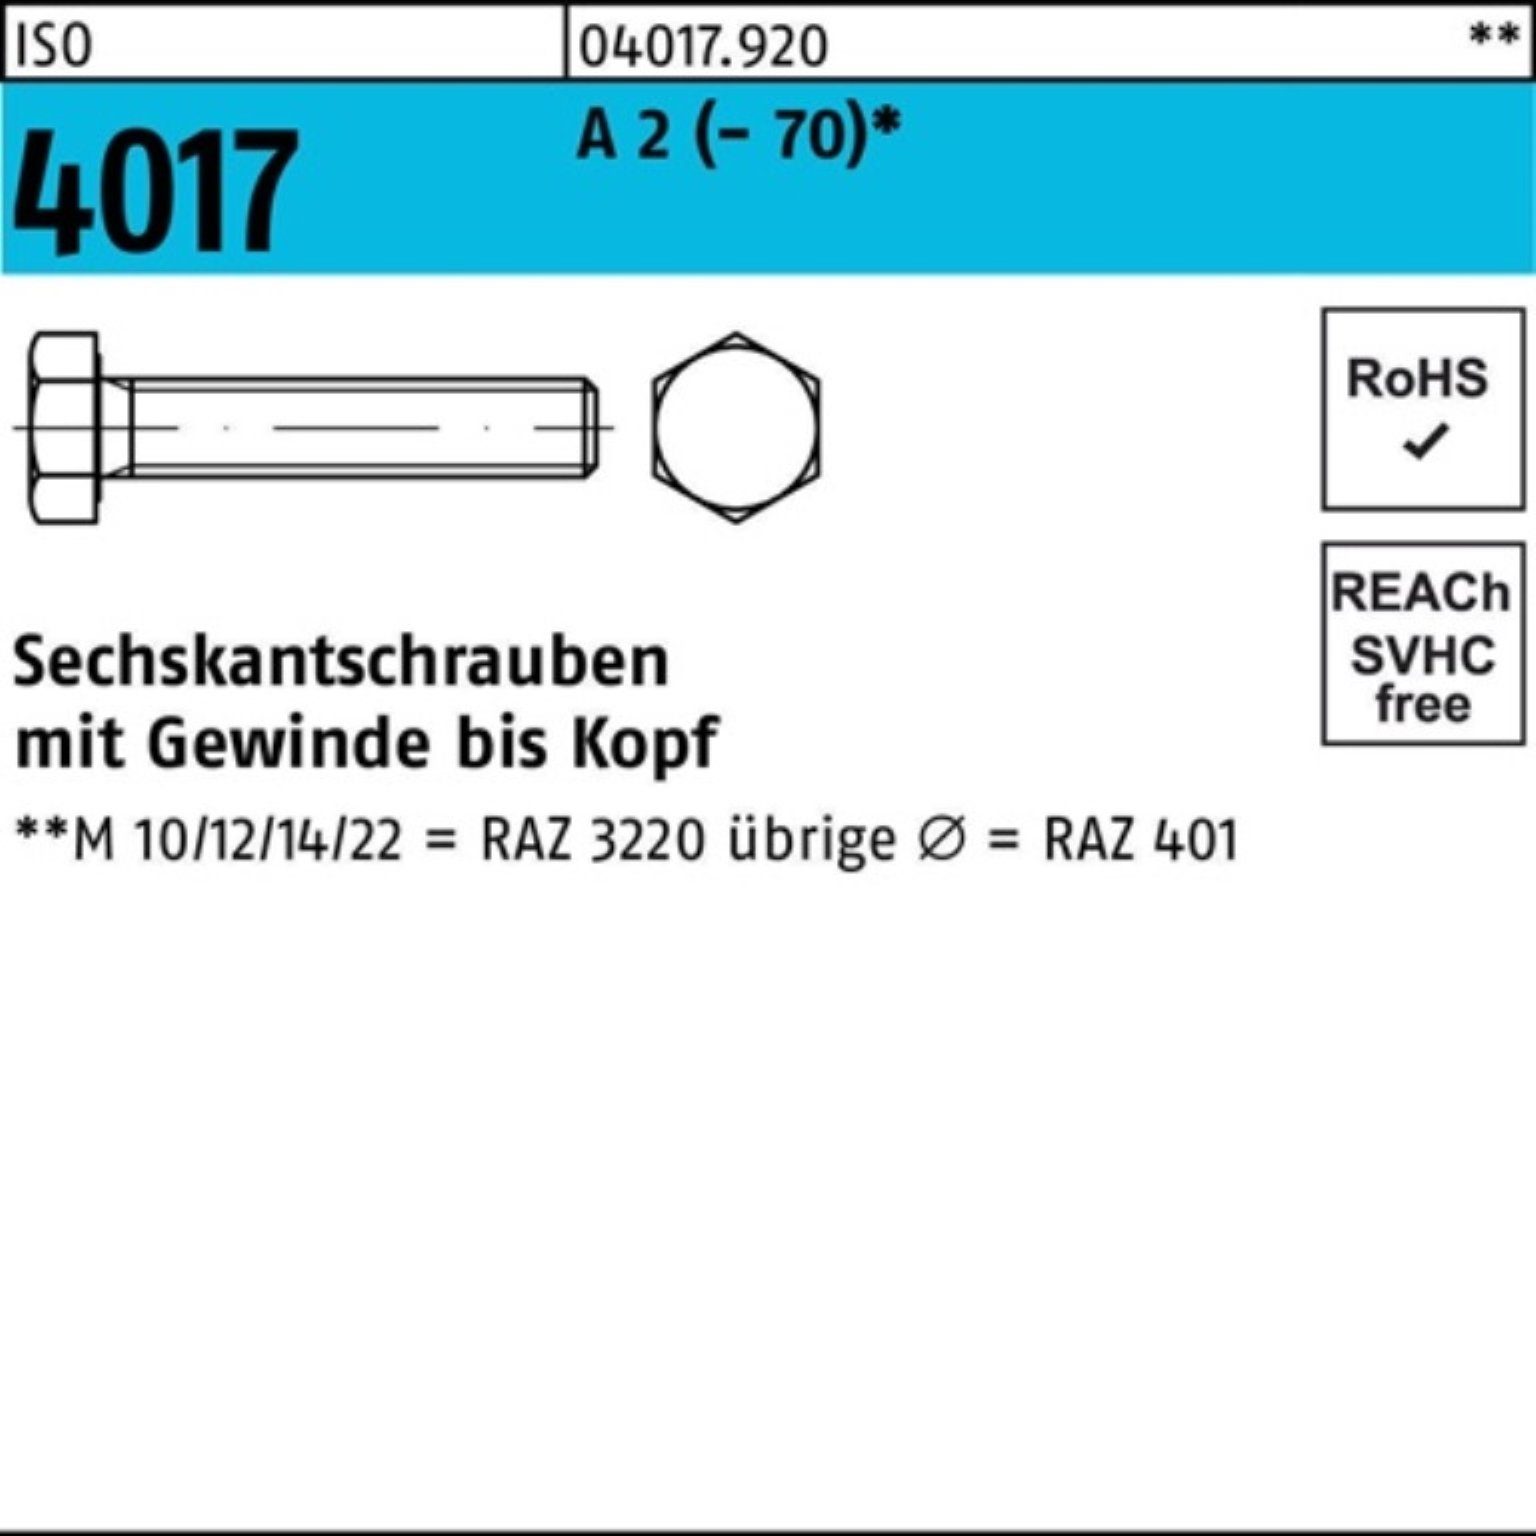 Bufab Sechskantschraube 100er Pack Sechskantschraube ISO 4017 VG M10x 18 A 2 (70) 100 Stück